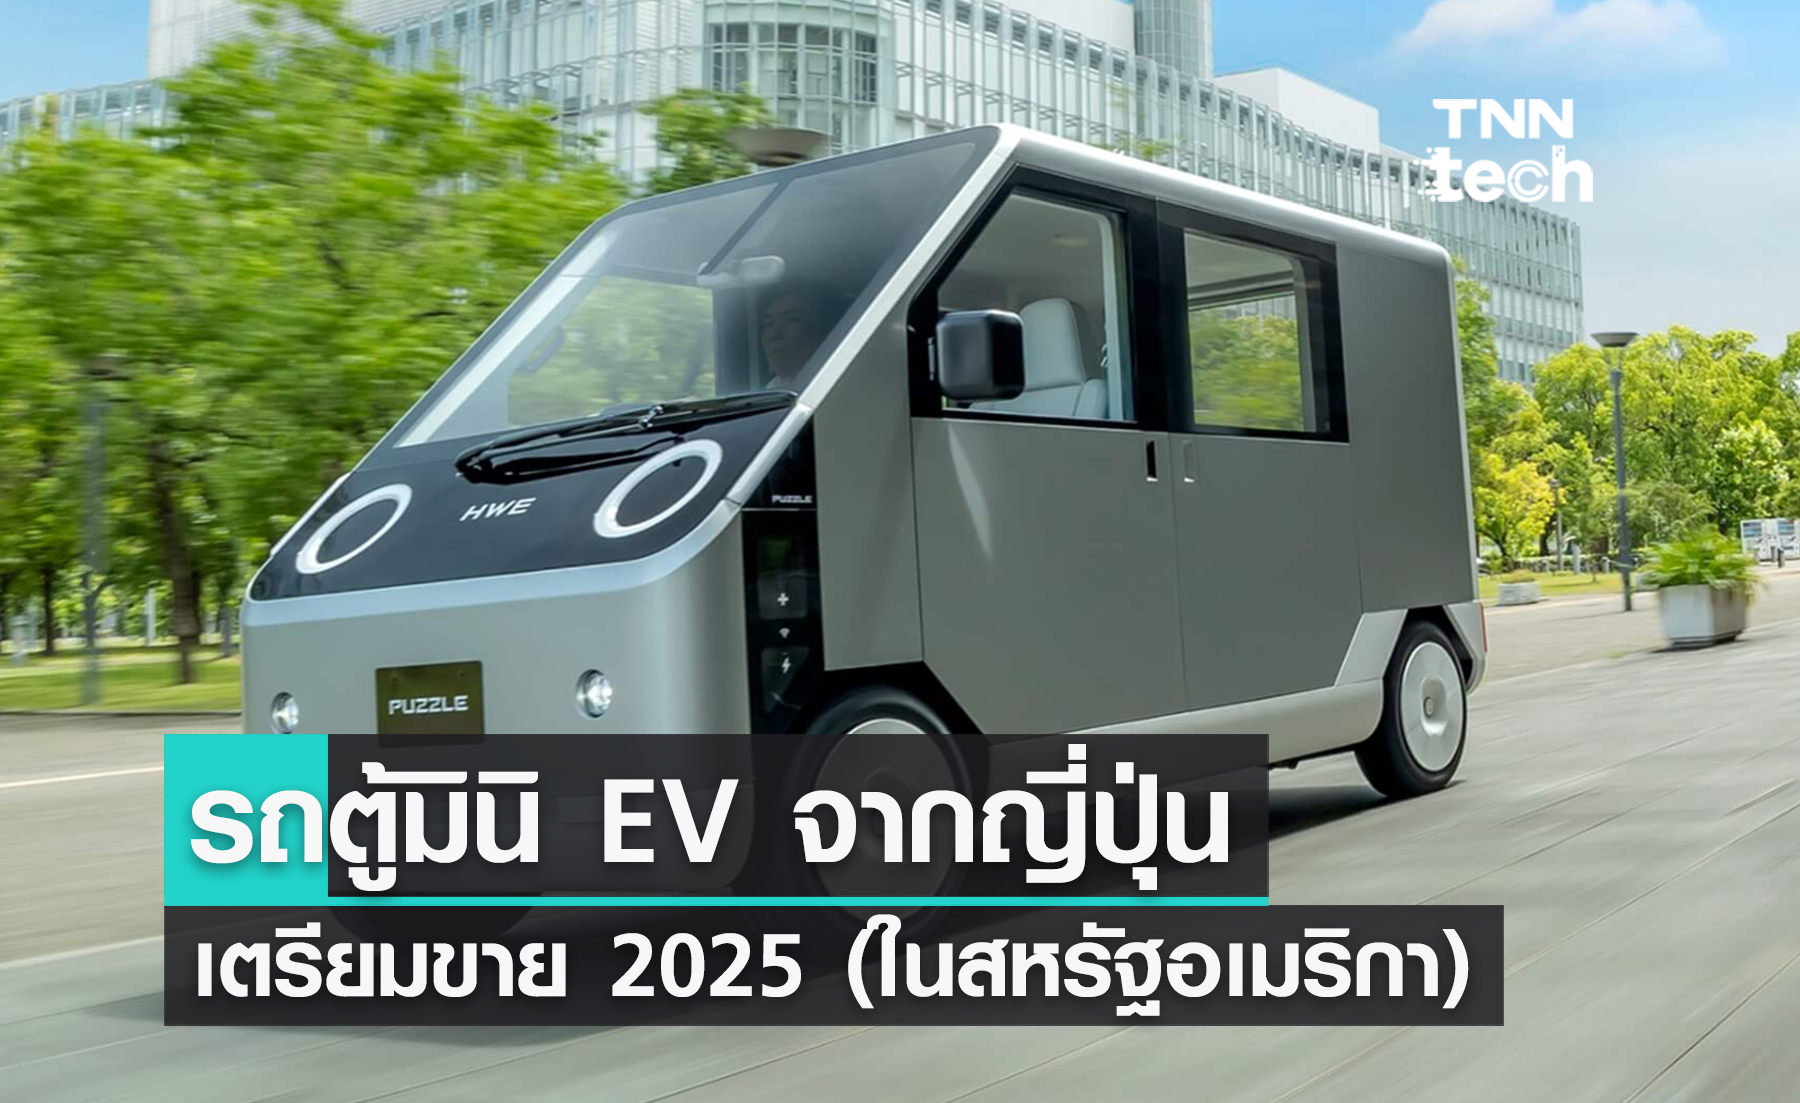 มาแล้ว ! รถตู้ EV ไซส์เล็กจาก "ญี่ปุ่น" เตรียมขาย 2025 นี้ (ในสหรัฐอเมริกา)